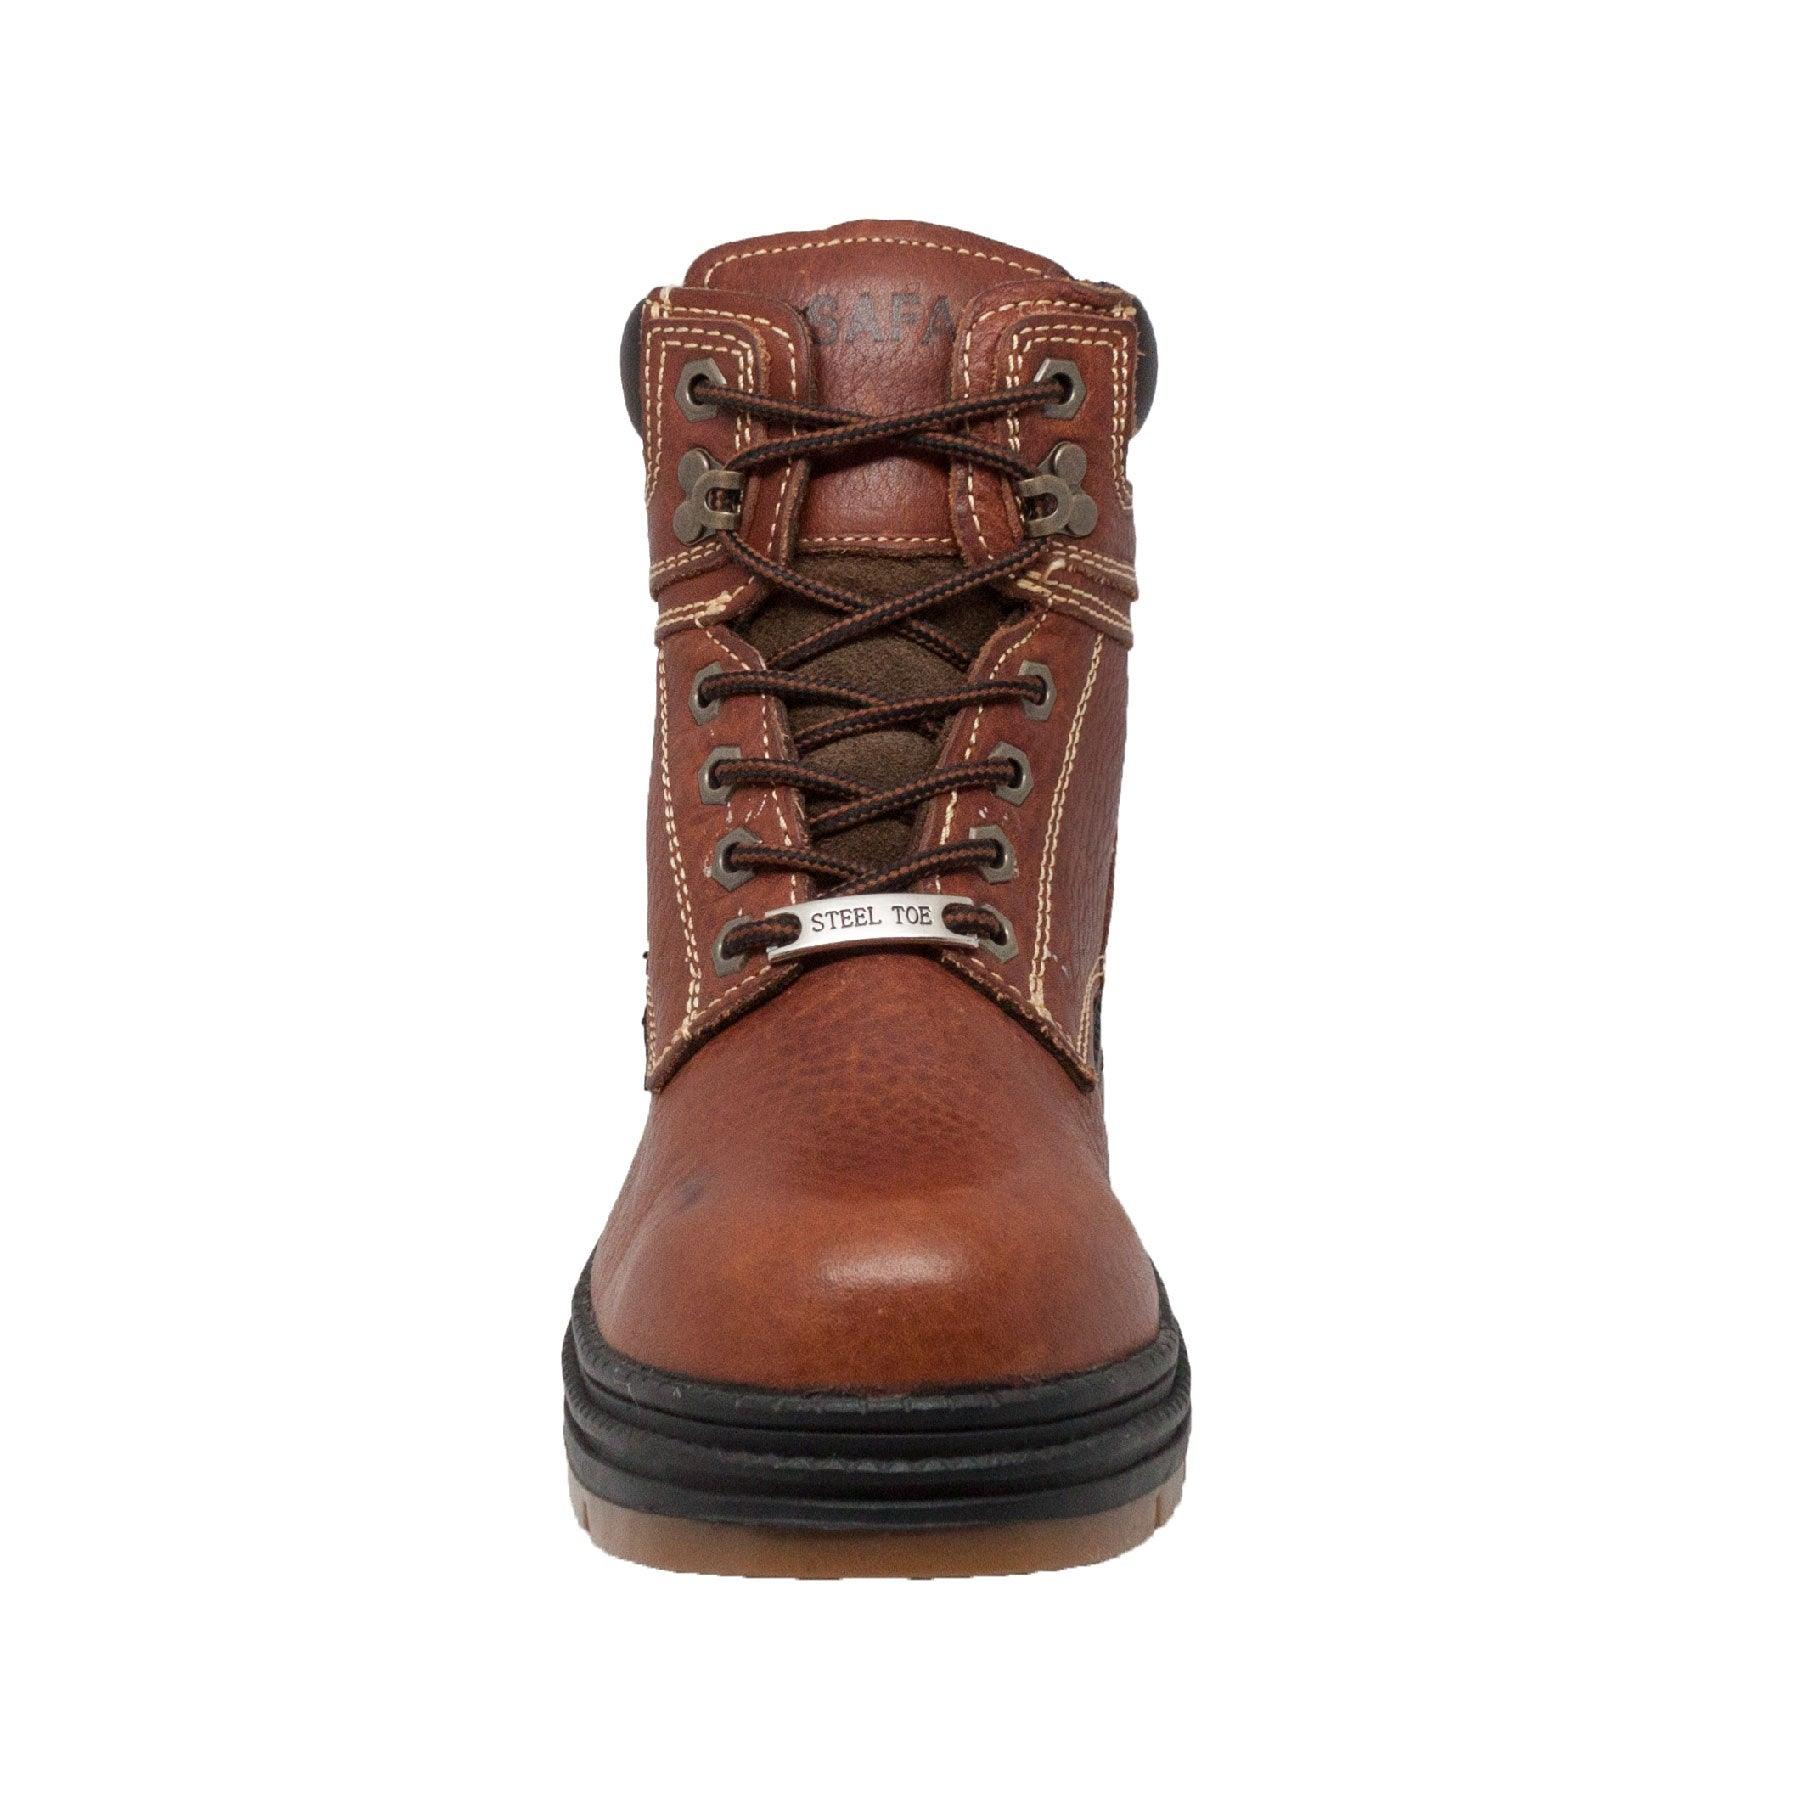 SAFA Mens 6 inch Waterproof Steel Toe Work Boot Dark Brown - Flyclothing LLC